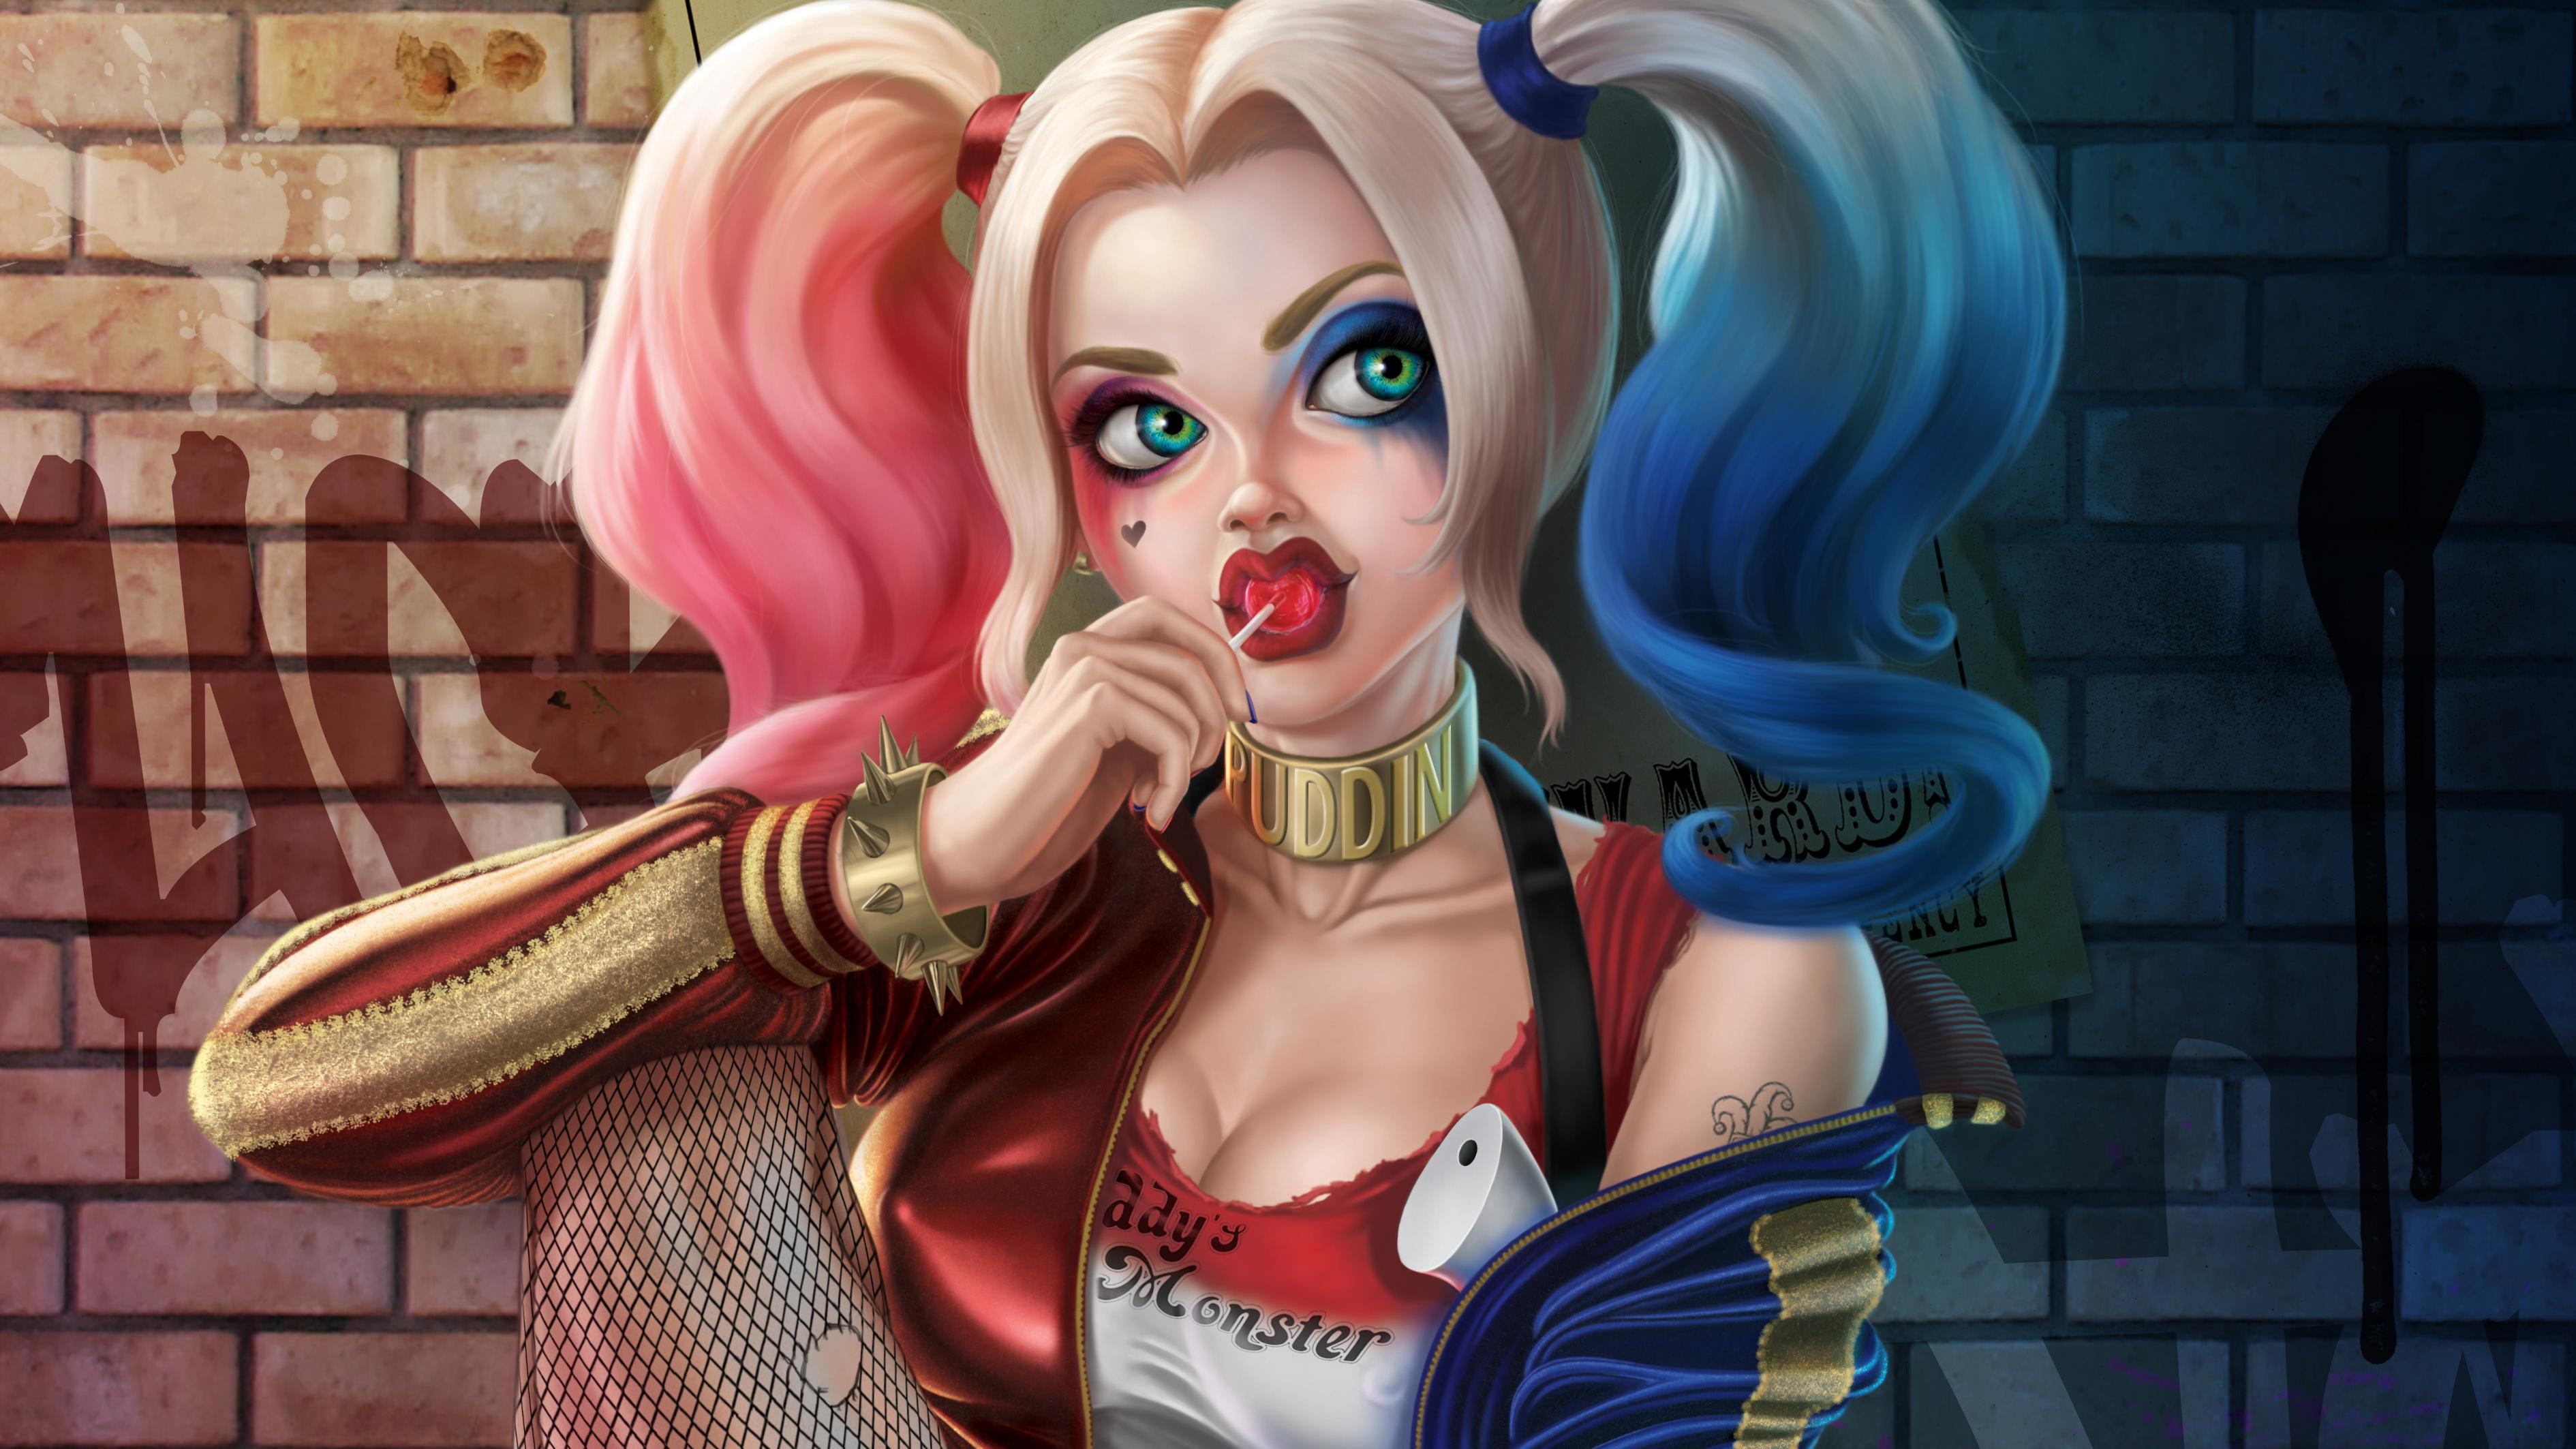 3780 x 2126 · jpeg - Harley Quinn 4k Cute, HD Superheroes, 4k Wallpapers, Images ...